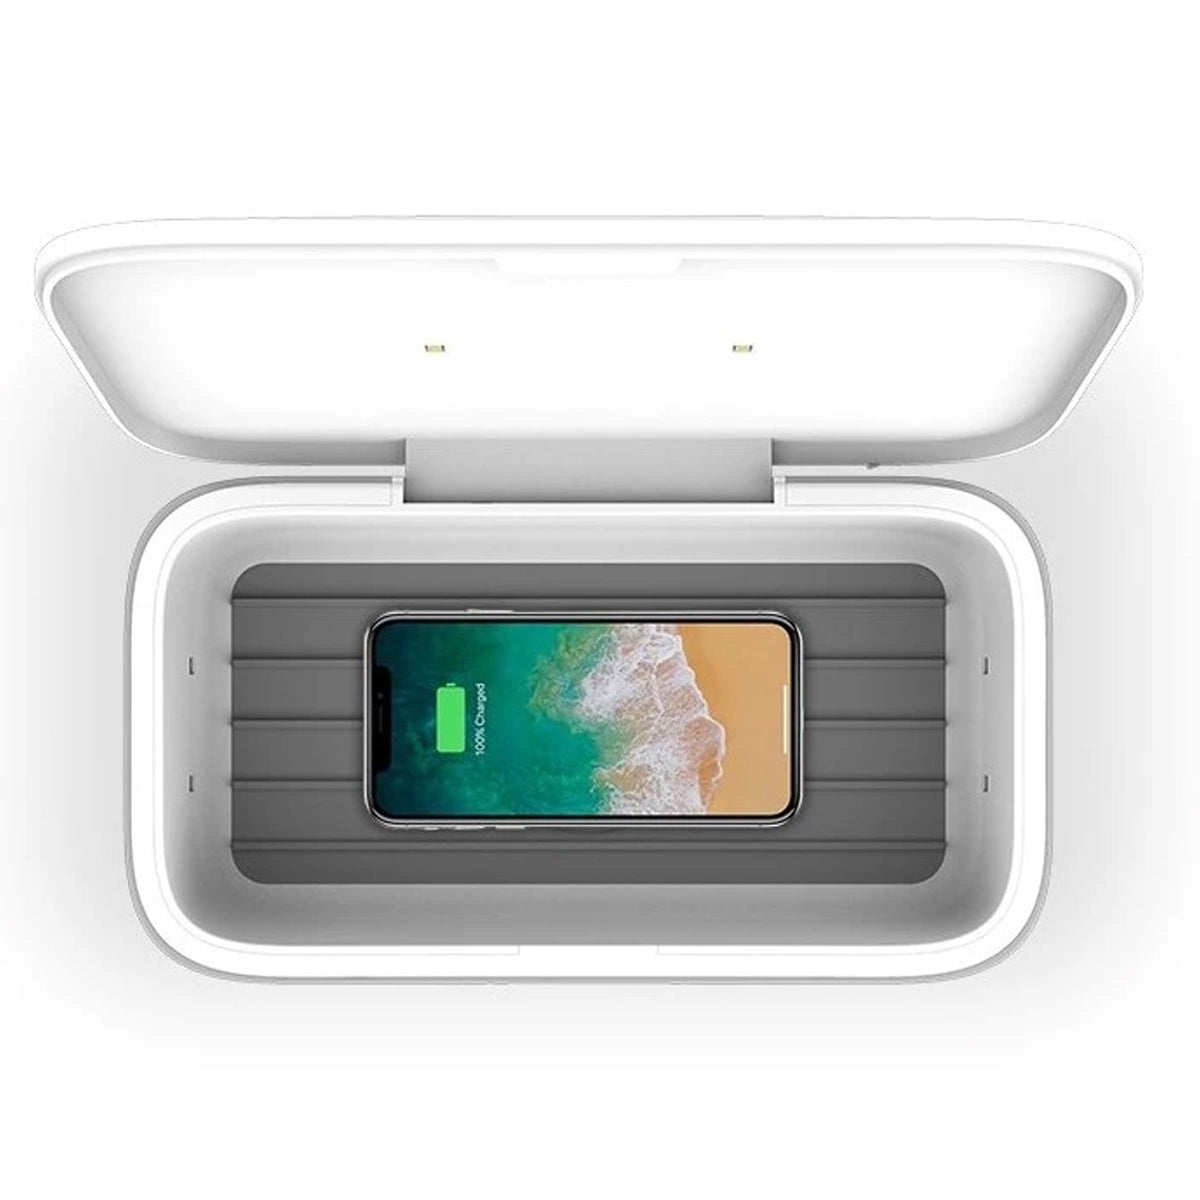 UVLicht - Premium Sterilizer Box & Wireless Charger - PRO